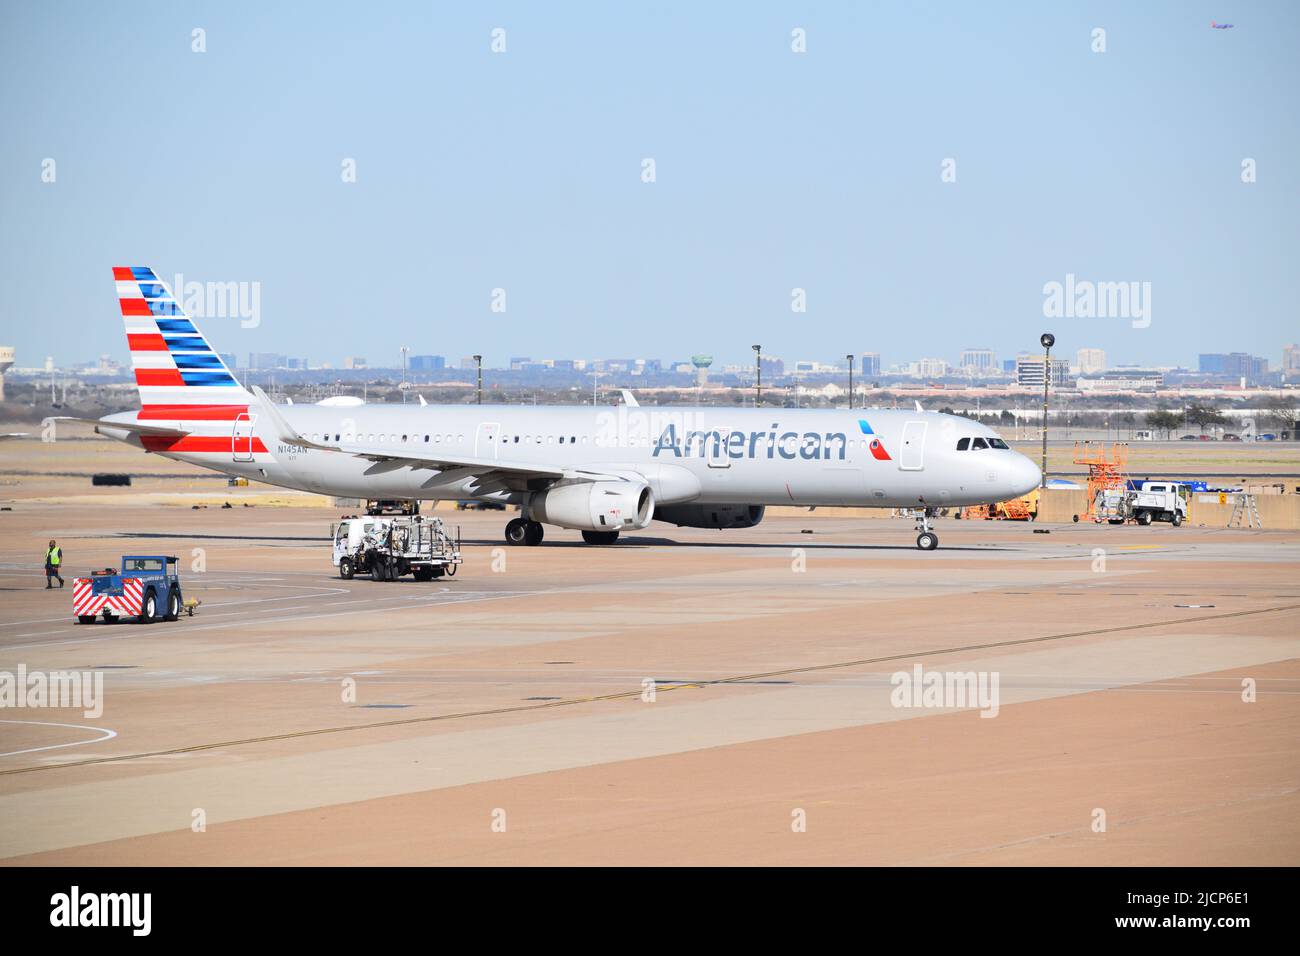 Ein Flugzeug von American Airlines, nachdem es von Ramp Service-Mitarbeitern außerhalb eines Terminals am DFW Airport (Dallas-Fort Worth Airport) gewartet wurde Stockfoto